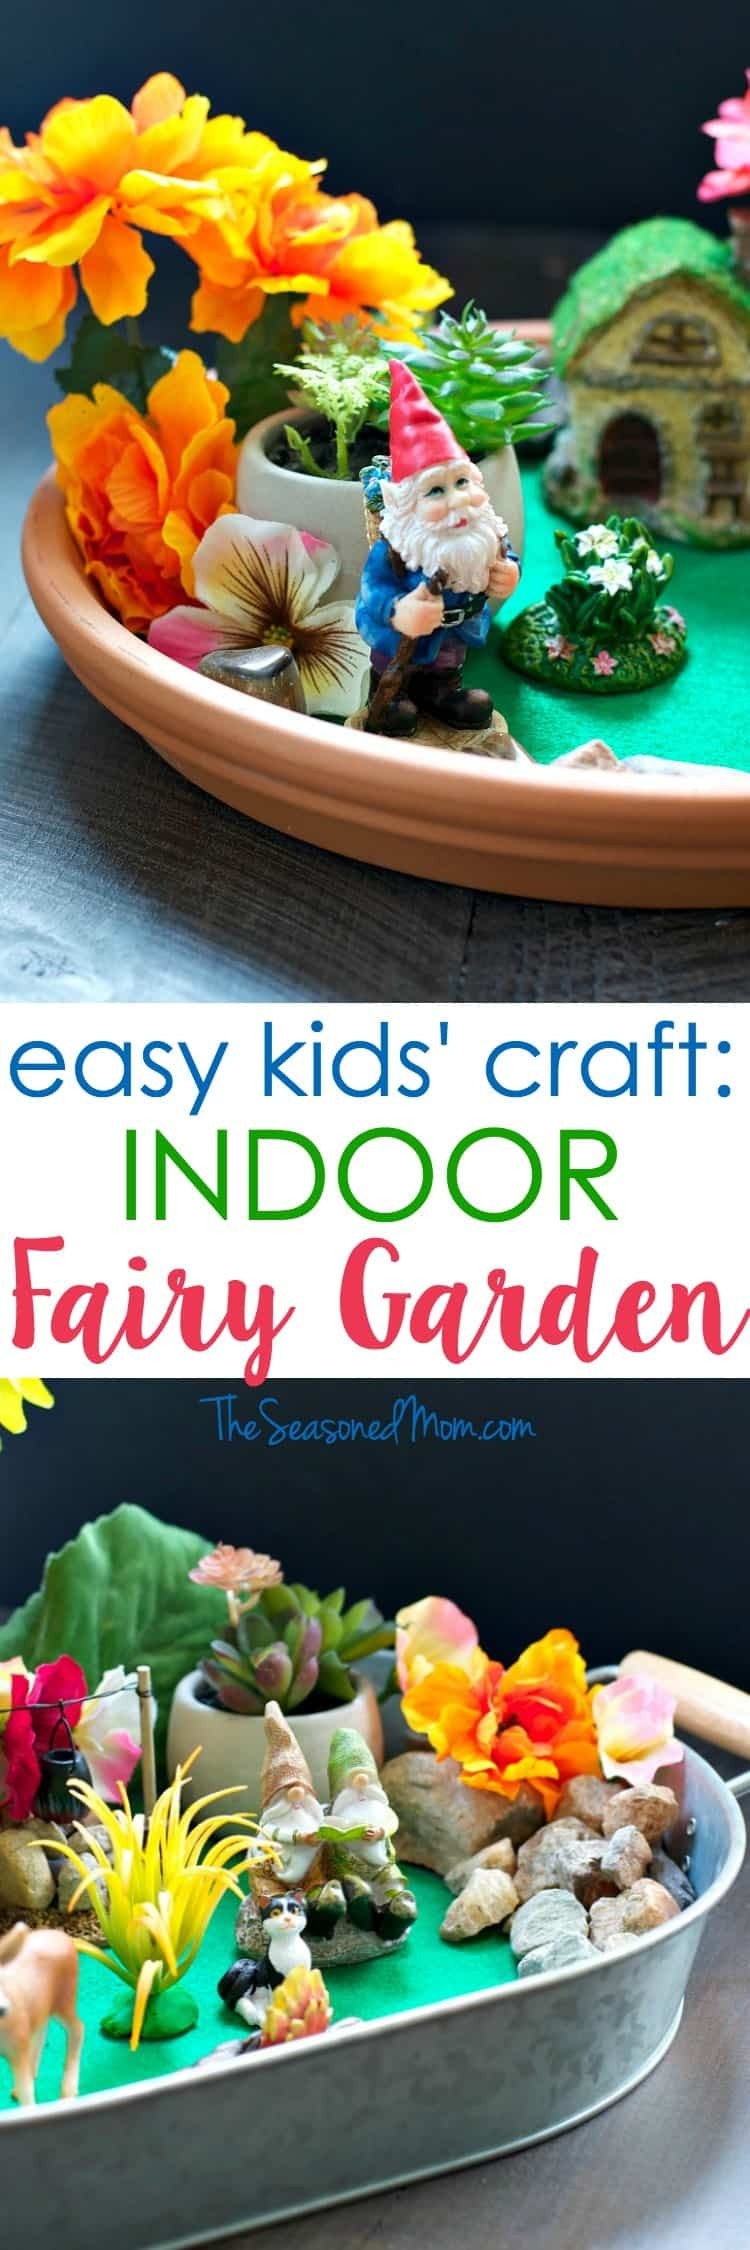 Kids Indoor Garden
 Indoor Fairy Garden An Easy Craft for Kids The Seasoned Mom